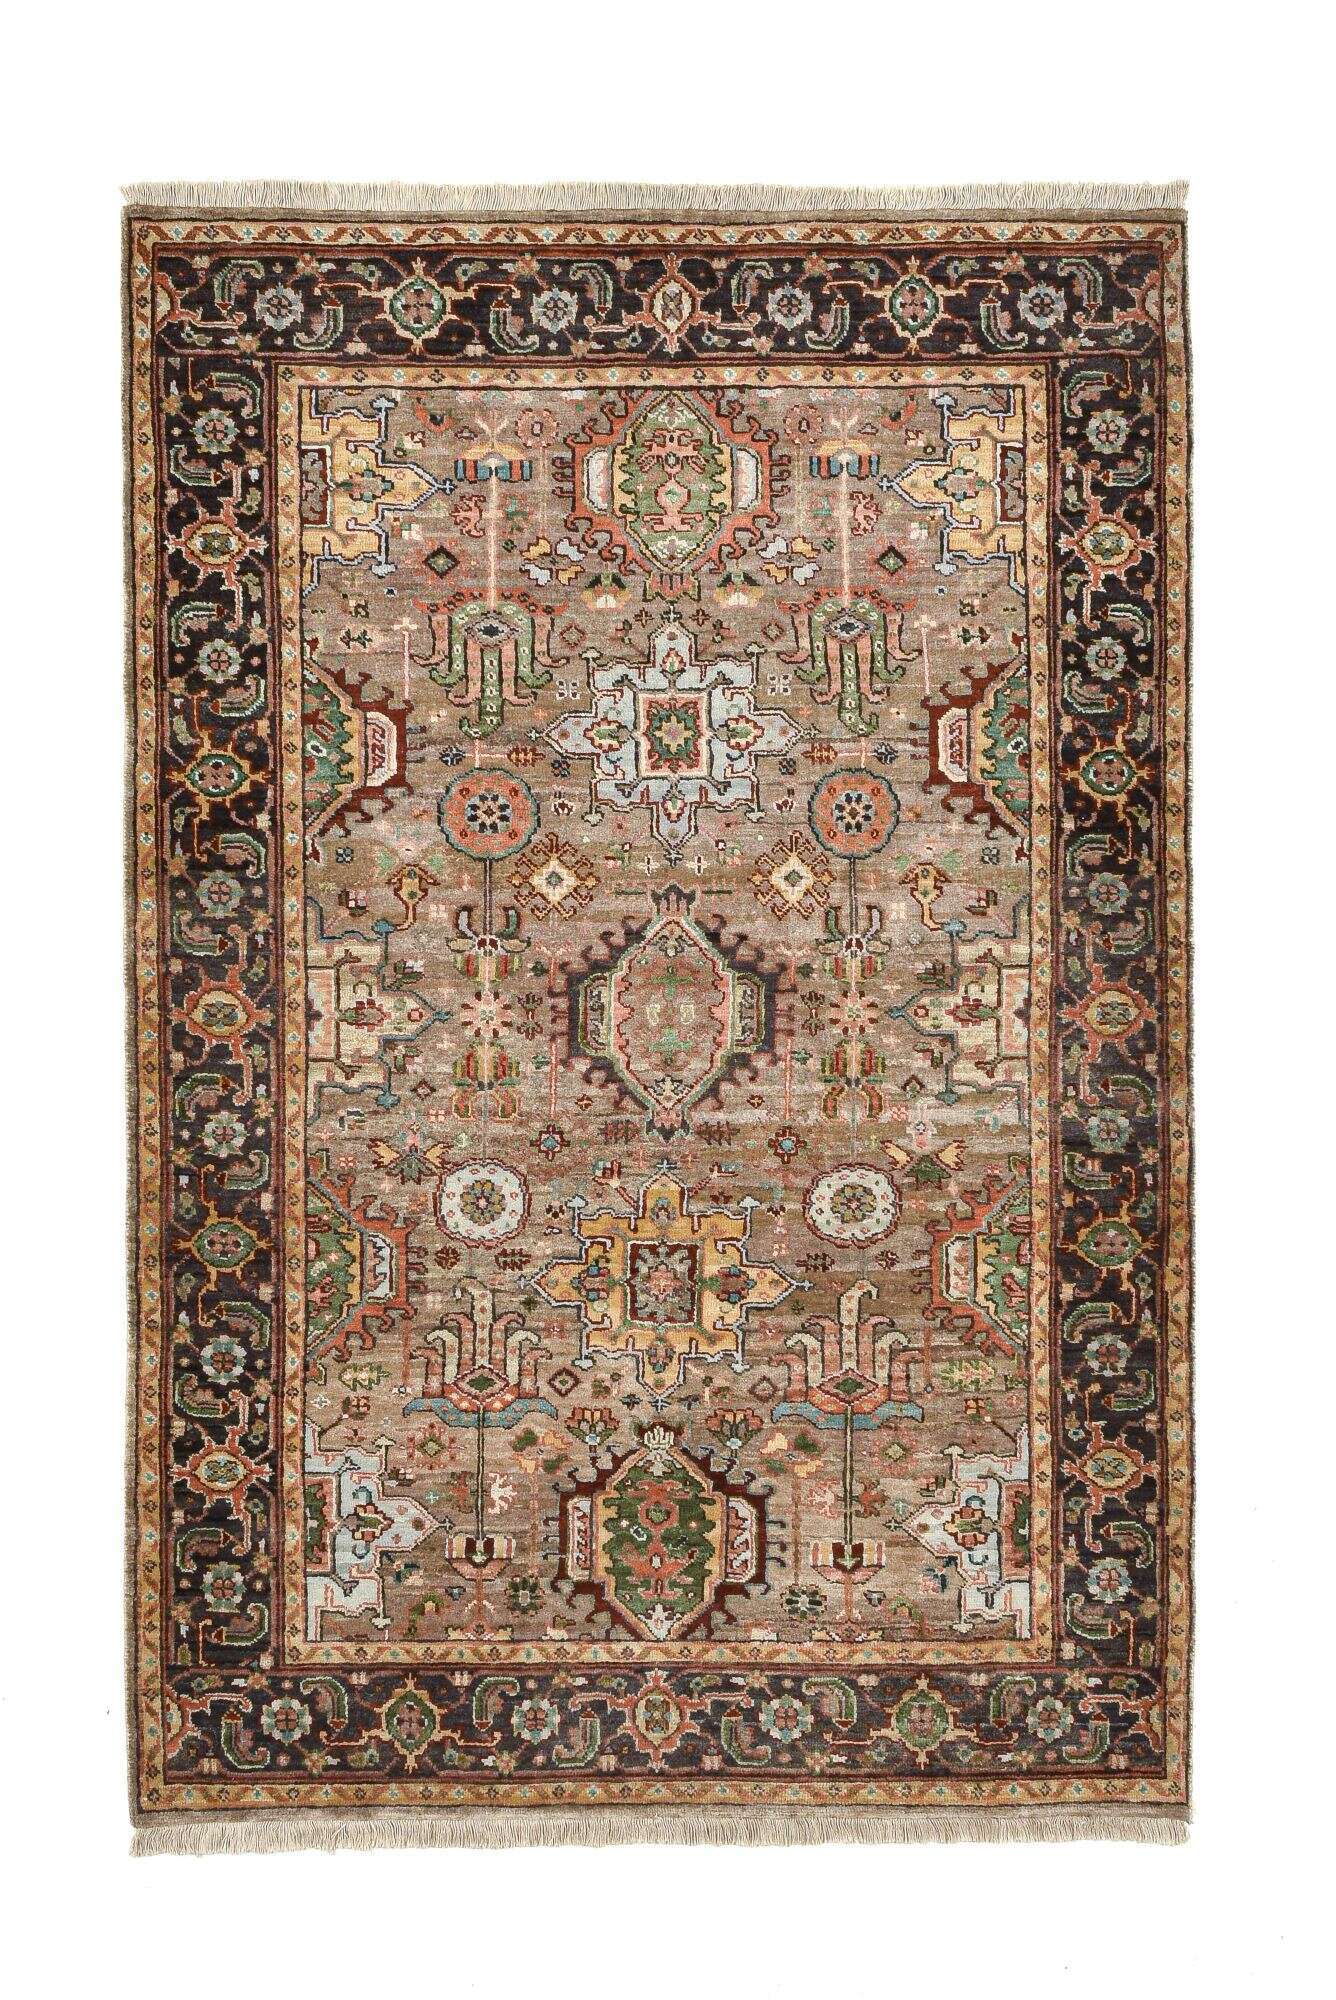 Amara Klassischer Teppich reine Schurwolle Handgeknüpft 119x179cm beige